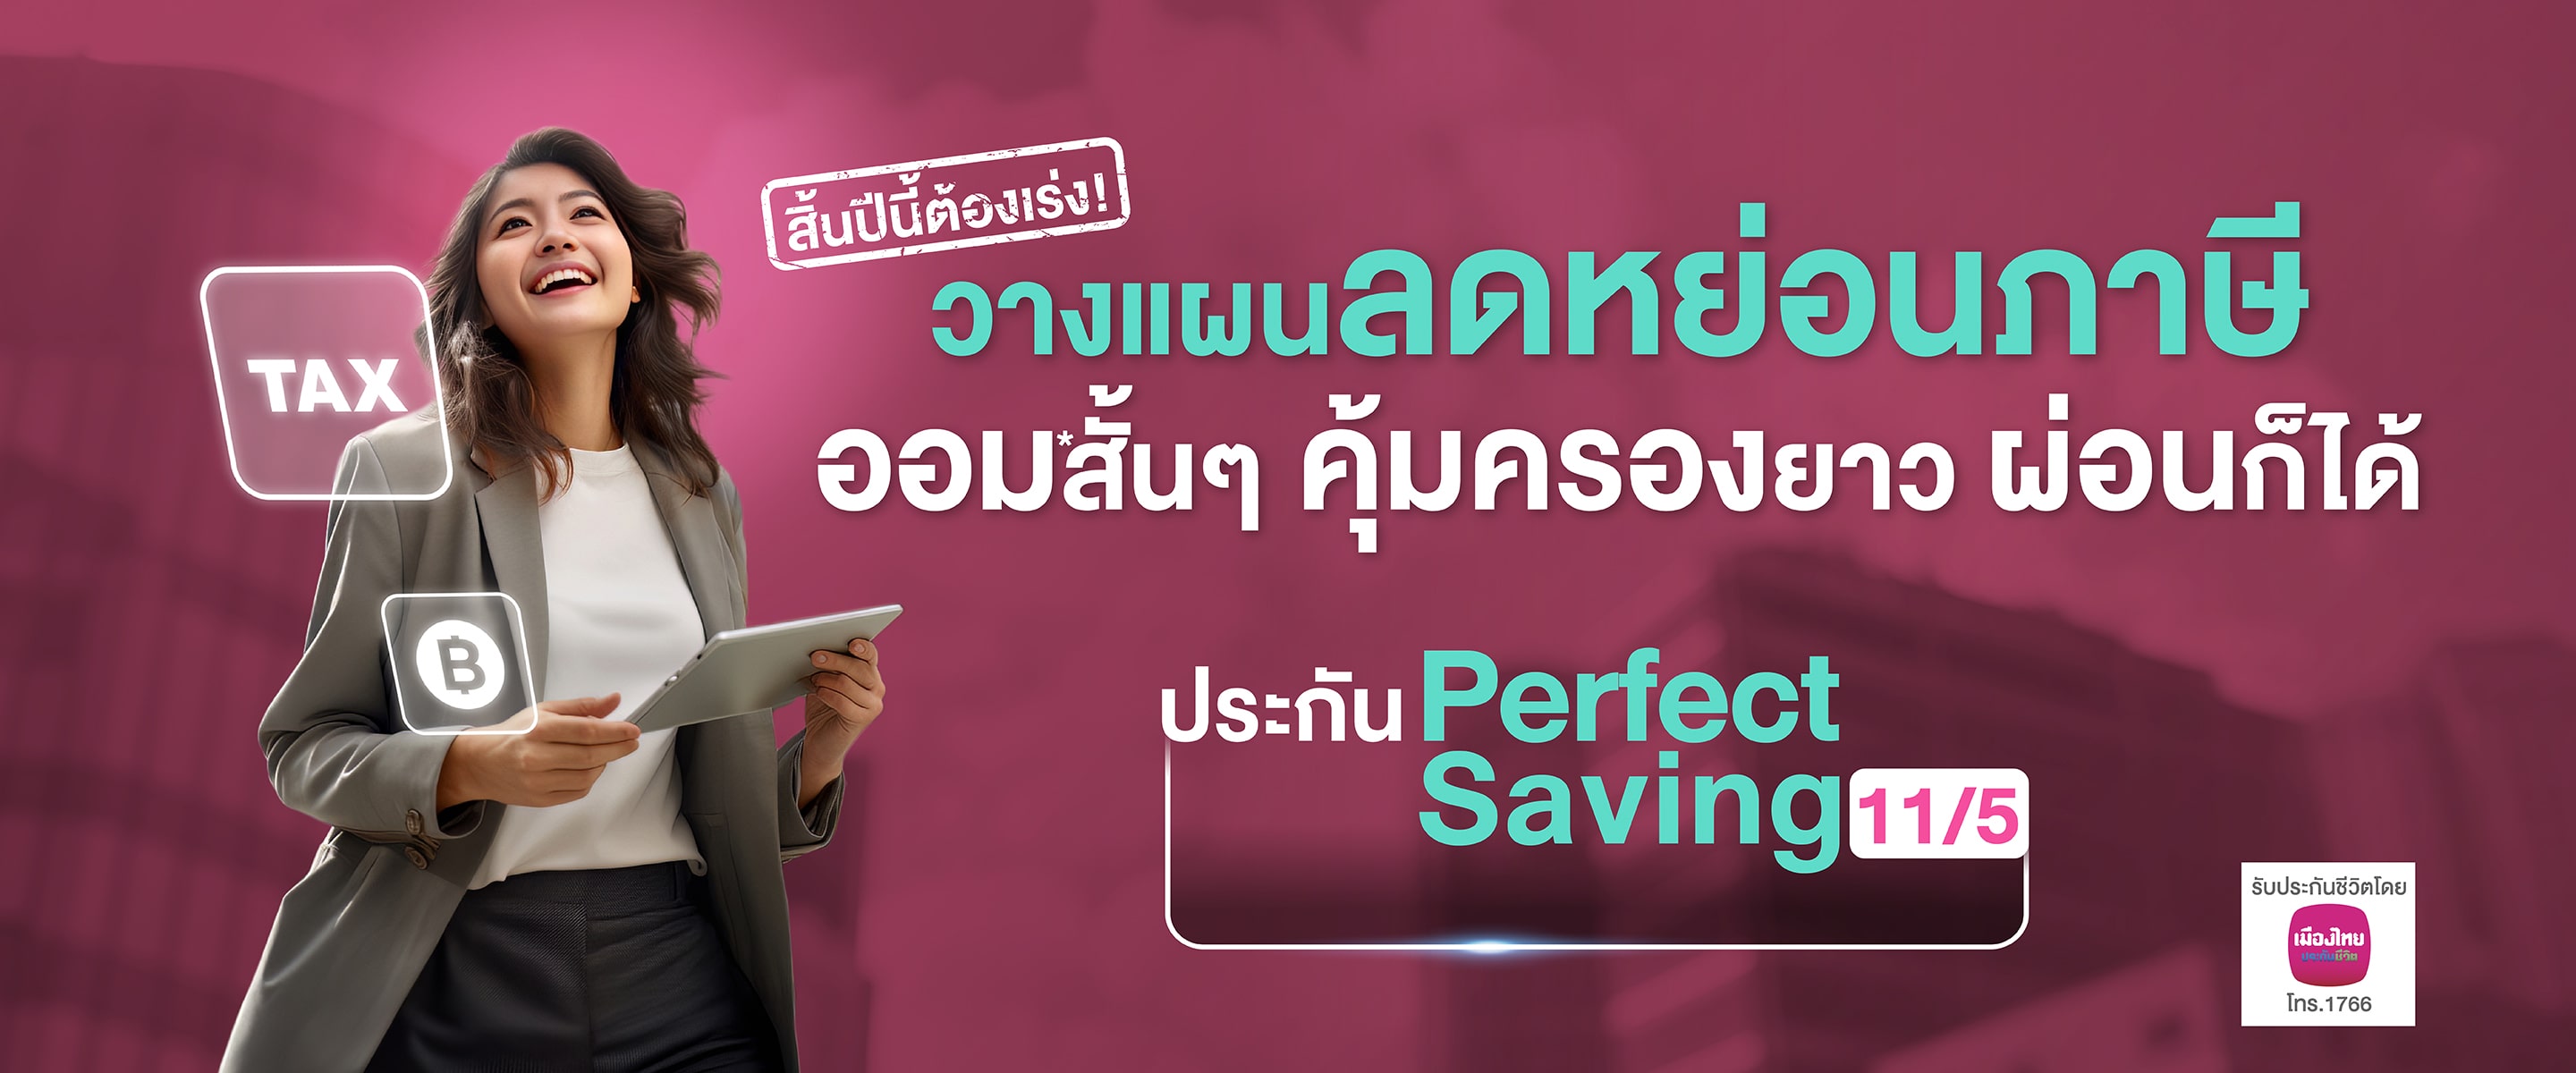 วางแผนอนาคตให้มั่นคง ครบทั้งออมและลดหย่อนภาษี 2566 ลดได้สูงสุด 1 แสนบาทประกันชีวิต ลดหย่อนภาษี Perfect Saving 11/5 ประกันชีวิต สะสมทรัพย์ ลดหย่อนภาษี จาก กสิกรไทย